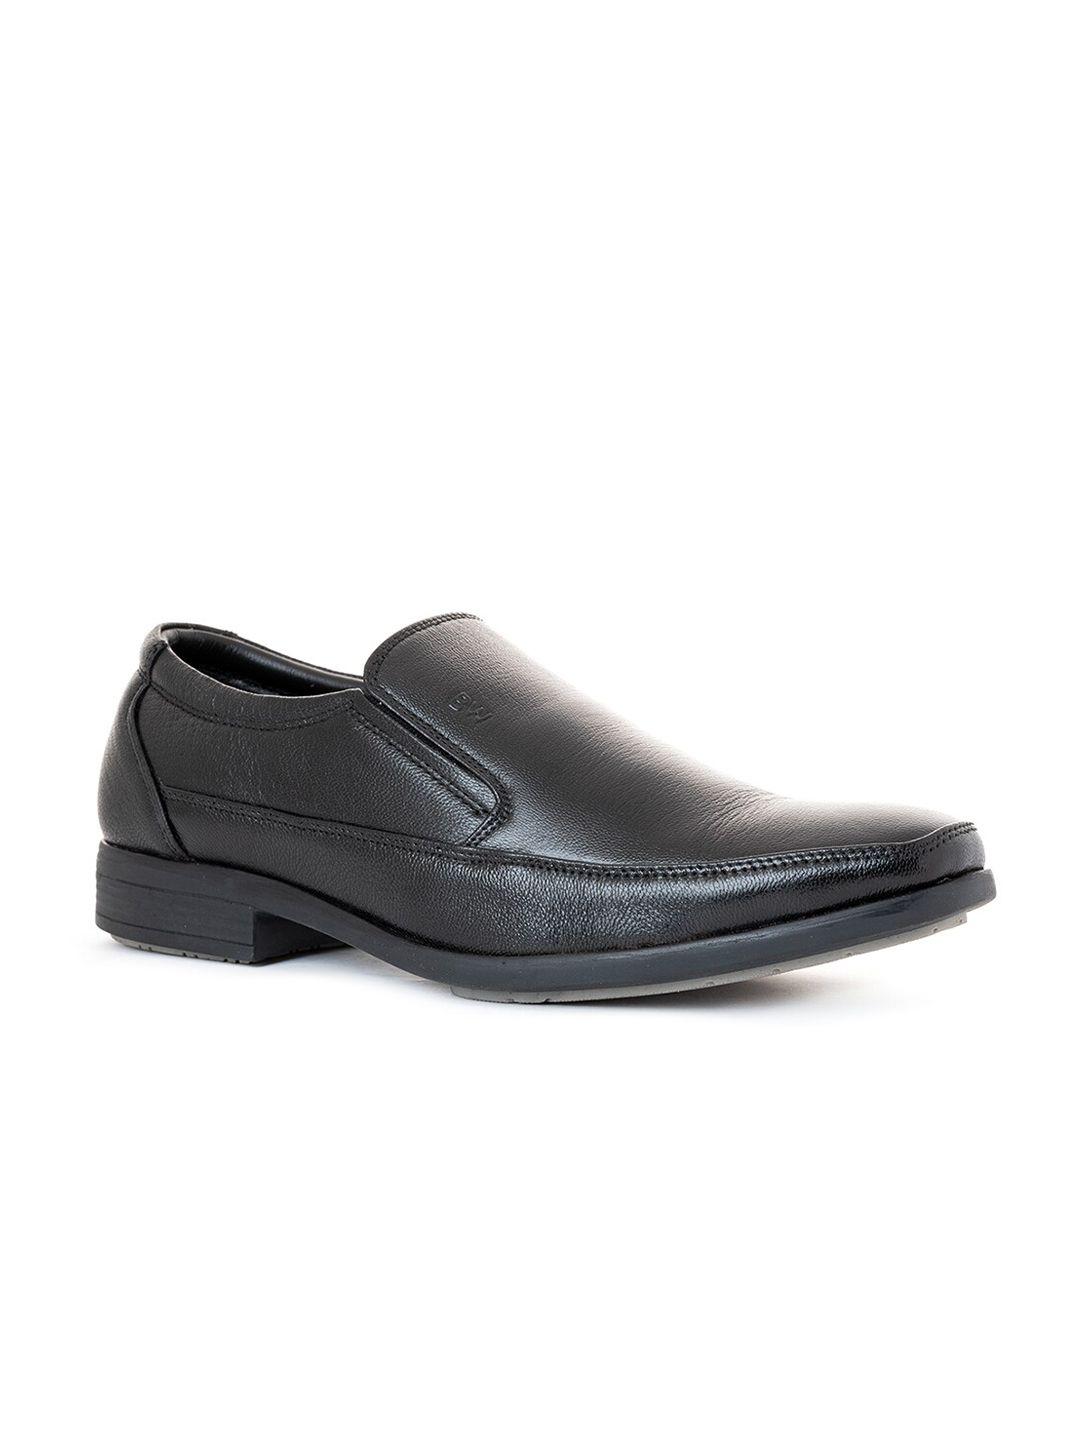 khadims men black leather slip-on sneakers